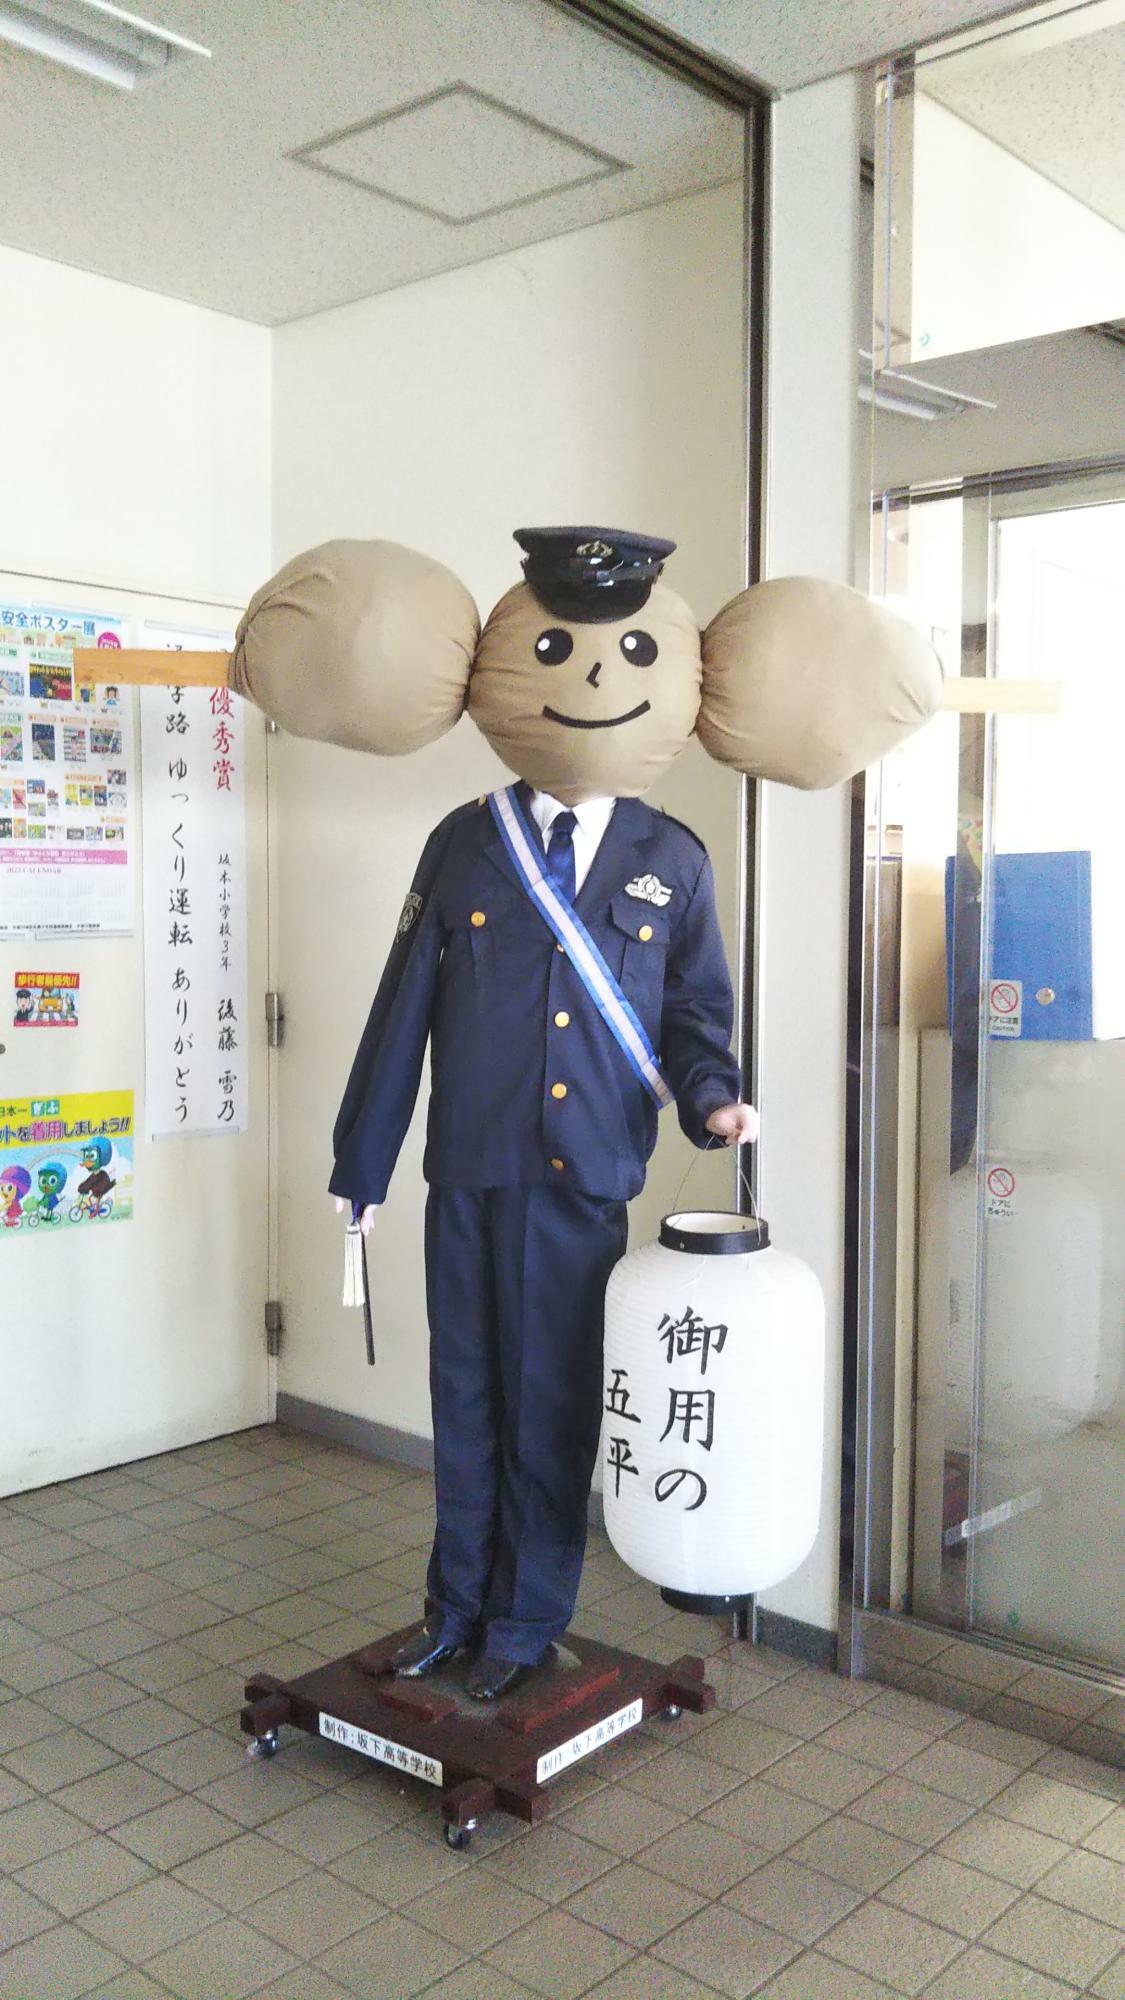 こちらは署内で自由に見ることができます。中津川警察署の熱意を感じますね。